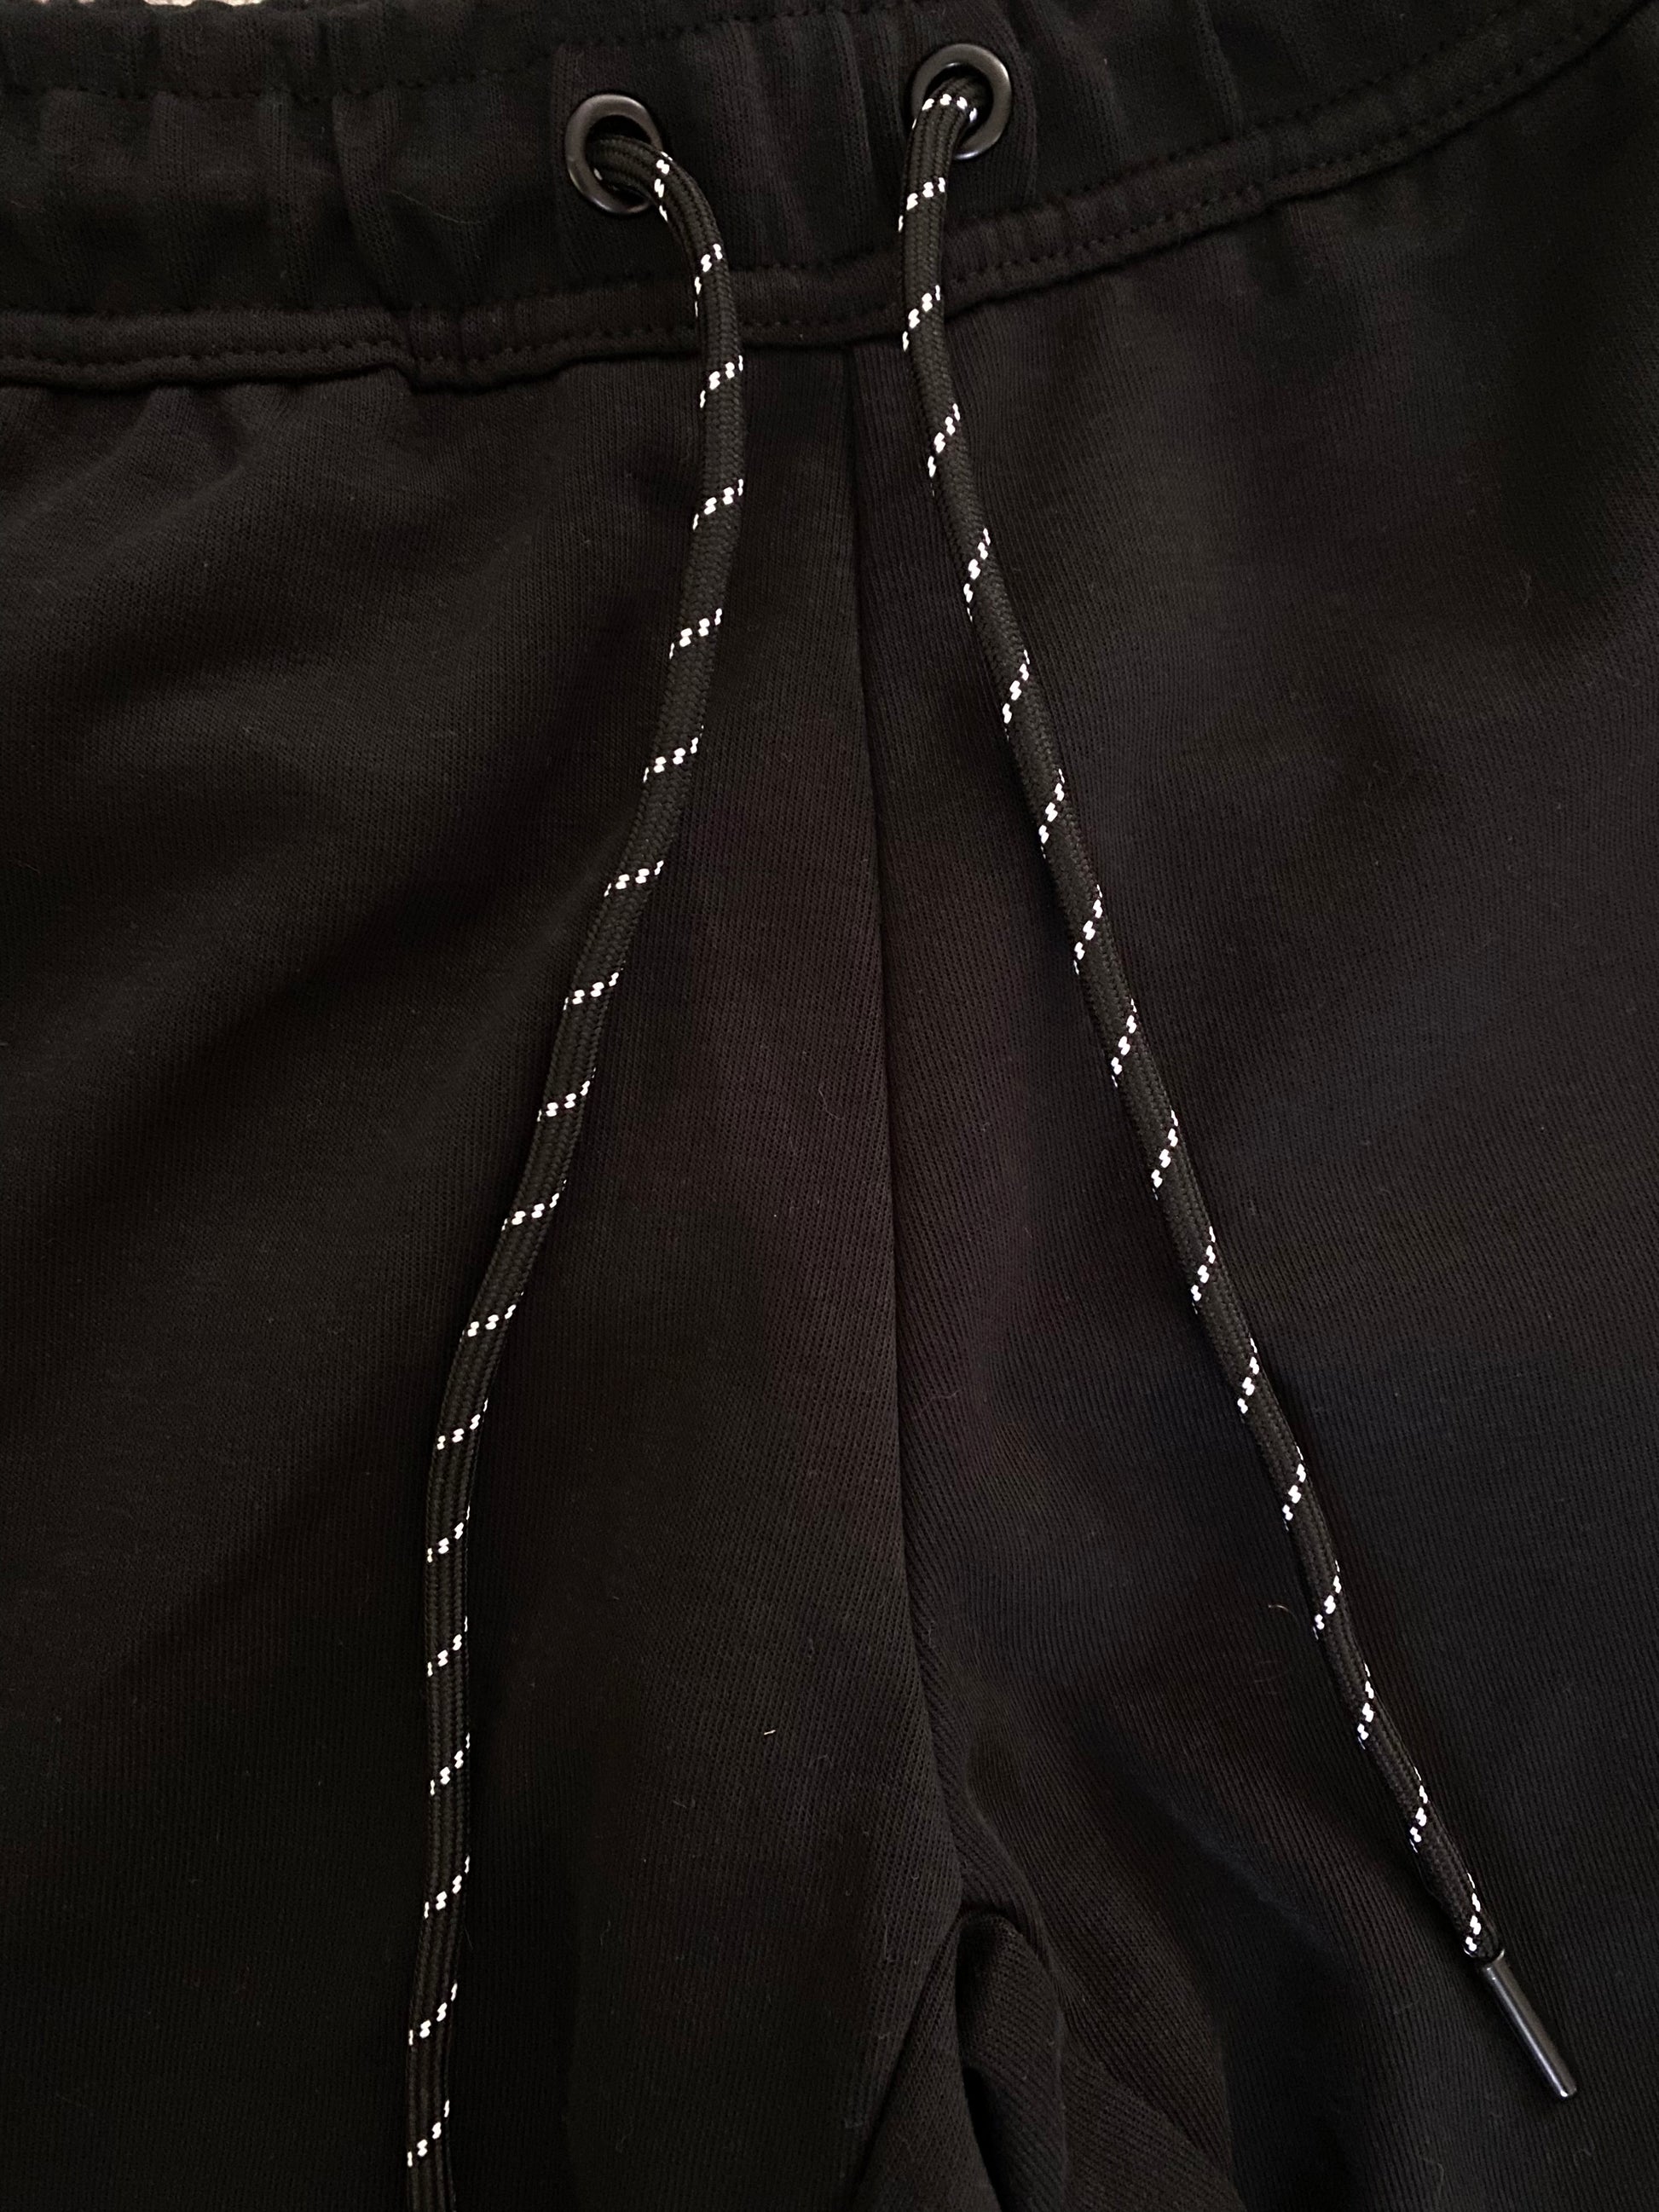 Nike Tech Fleece Black - Icy Clothes Ro